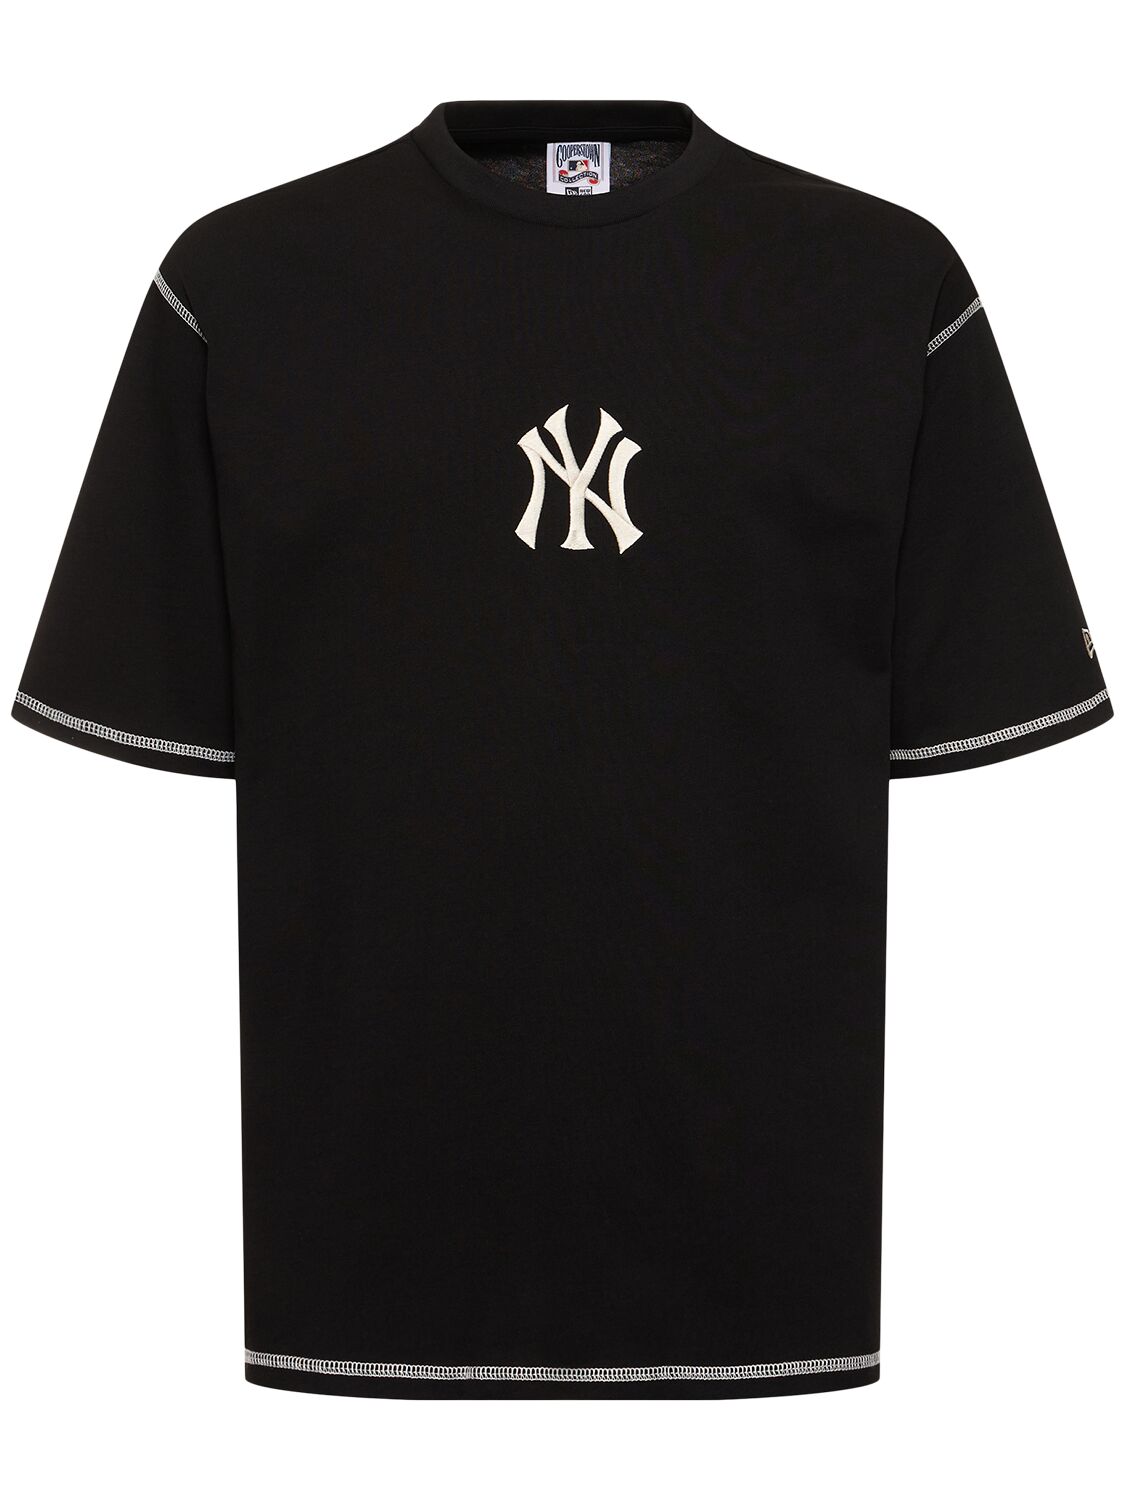 Image of Ny Yankees Mlb Word Series T-shirt